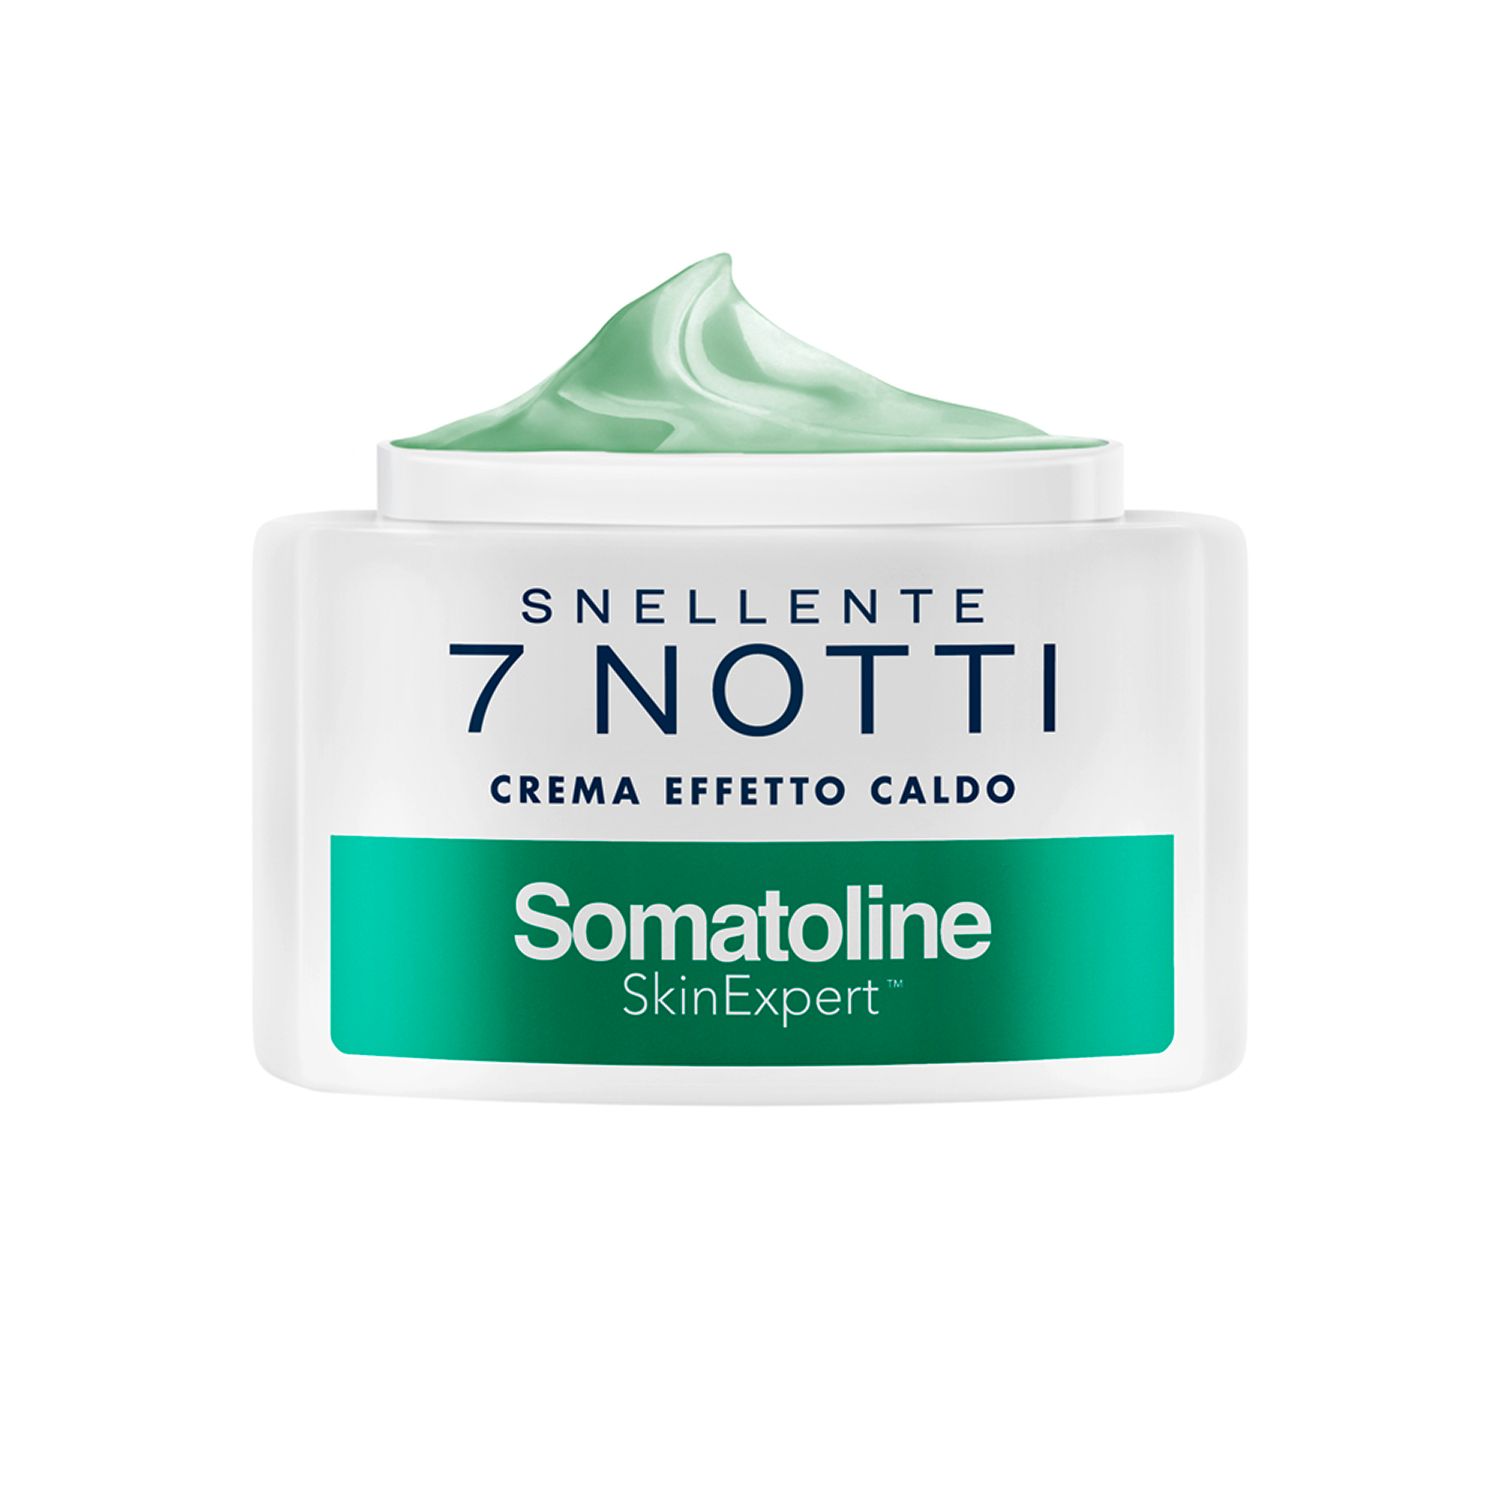 Somatoline Cosmetic® Crema Snellente 7 Notti Effetto Caldo